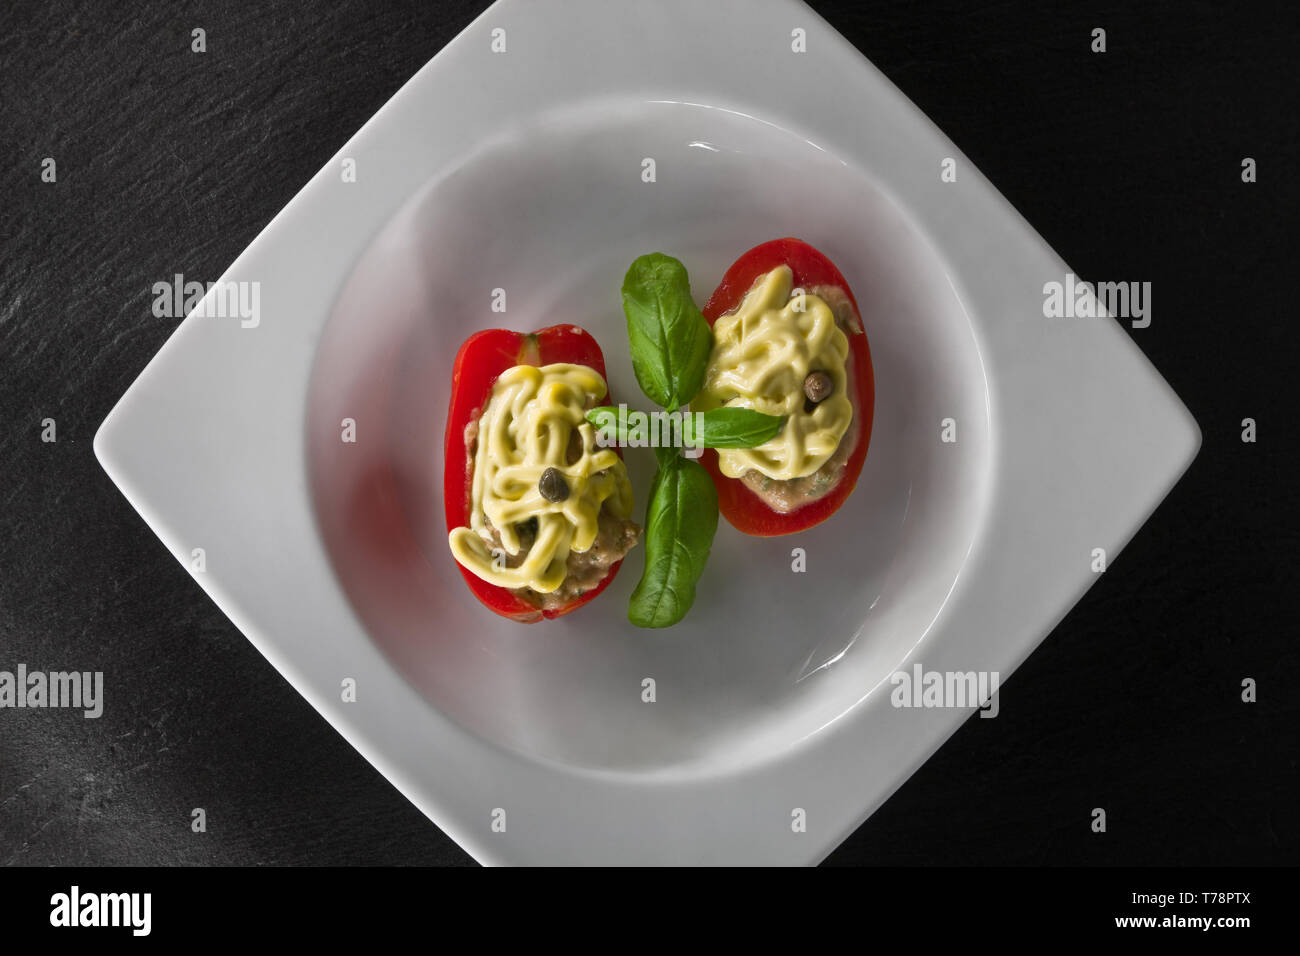 Un piatto di pomodori ripieni con guarnitura maionese e di foglia di basilico. [ENG] un plat rempli de tomates couvertes avec de la mayonnaise et partie de basilic Banque D'Images